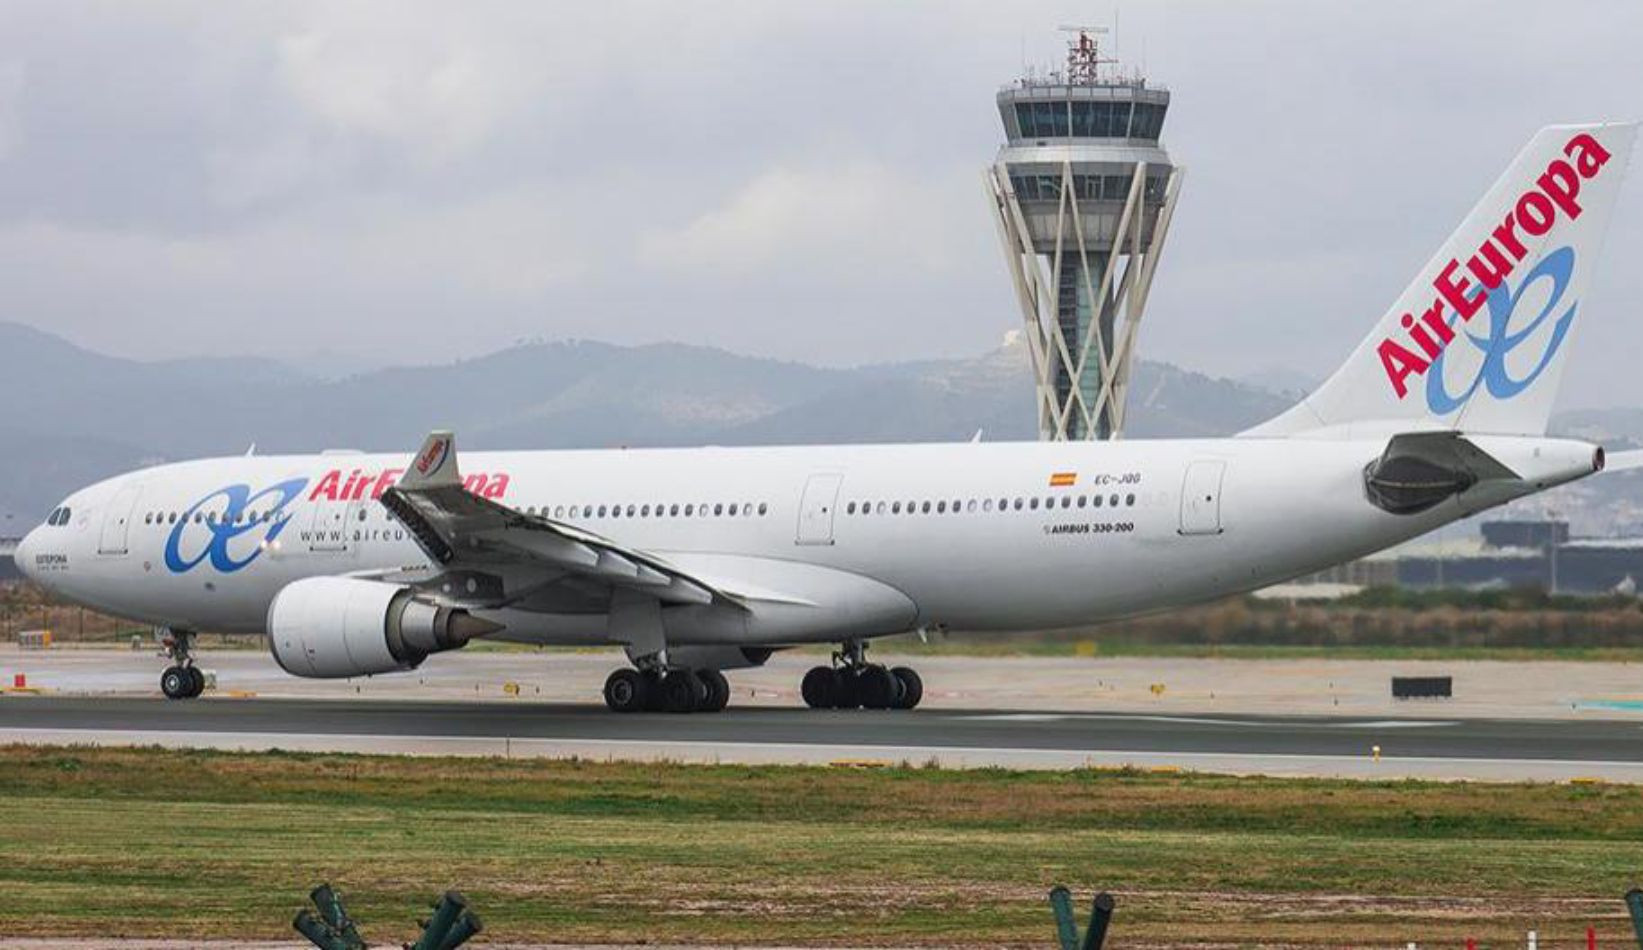 Una aeronave de Air Europa en el aeropuerto de Barcelona-El Prat, con la torre de control de fondo / CG